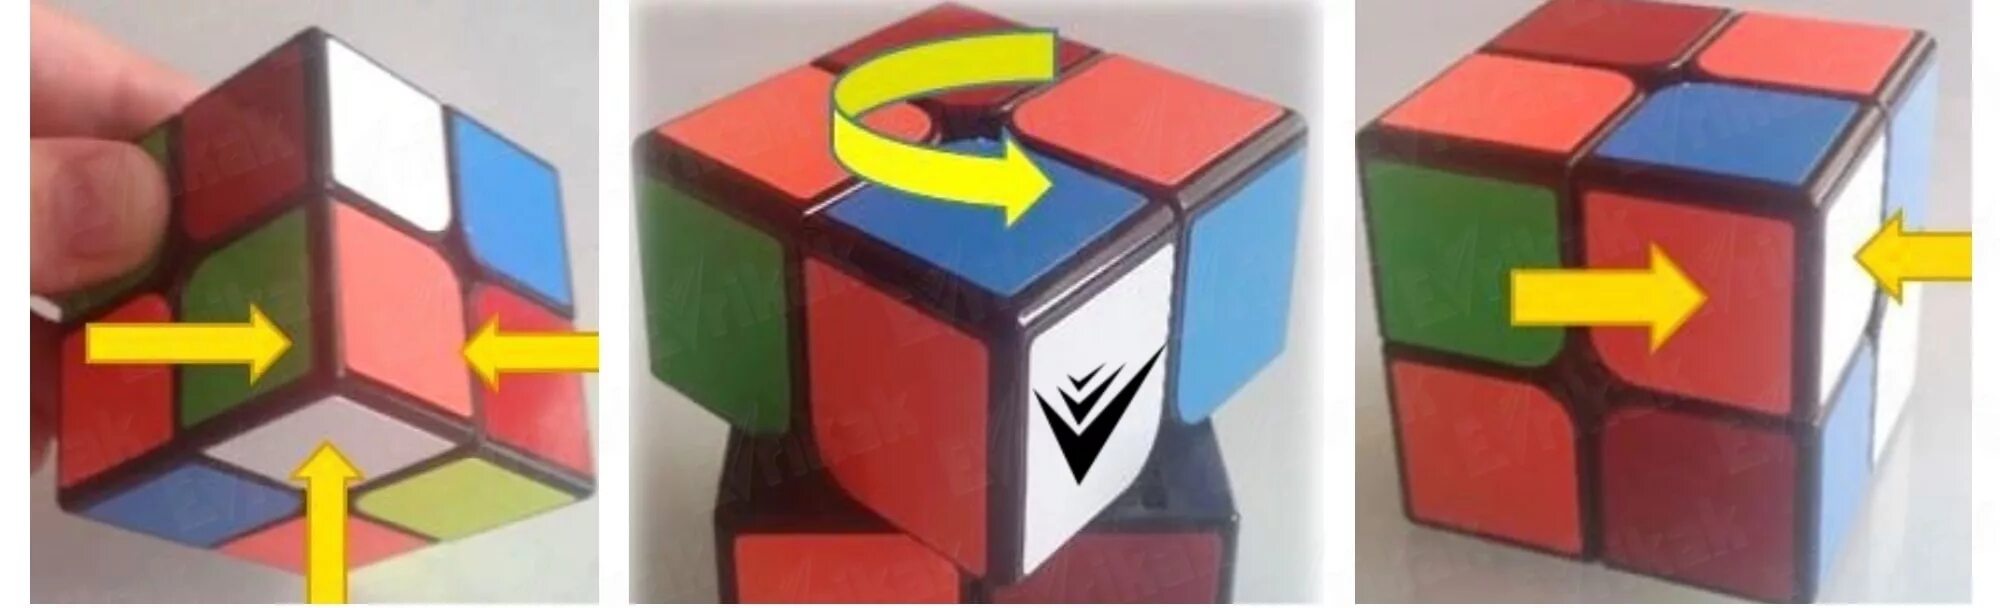 Как сделать в комбинация кубов. Комбинации кубика Рубика 2 на 2. Сборка кубика Рубика 2х2 ПИФ-паф. ПИФ паф кубик 2x2. ПИФ паф кубик Рубика 2х2.